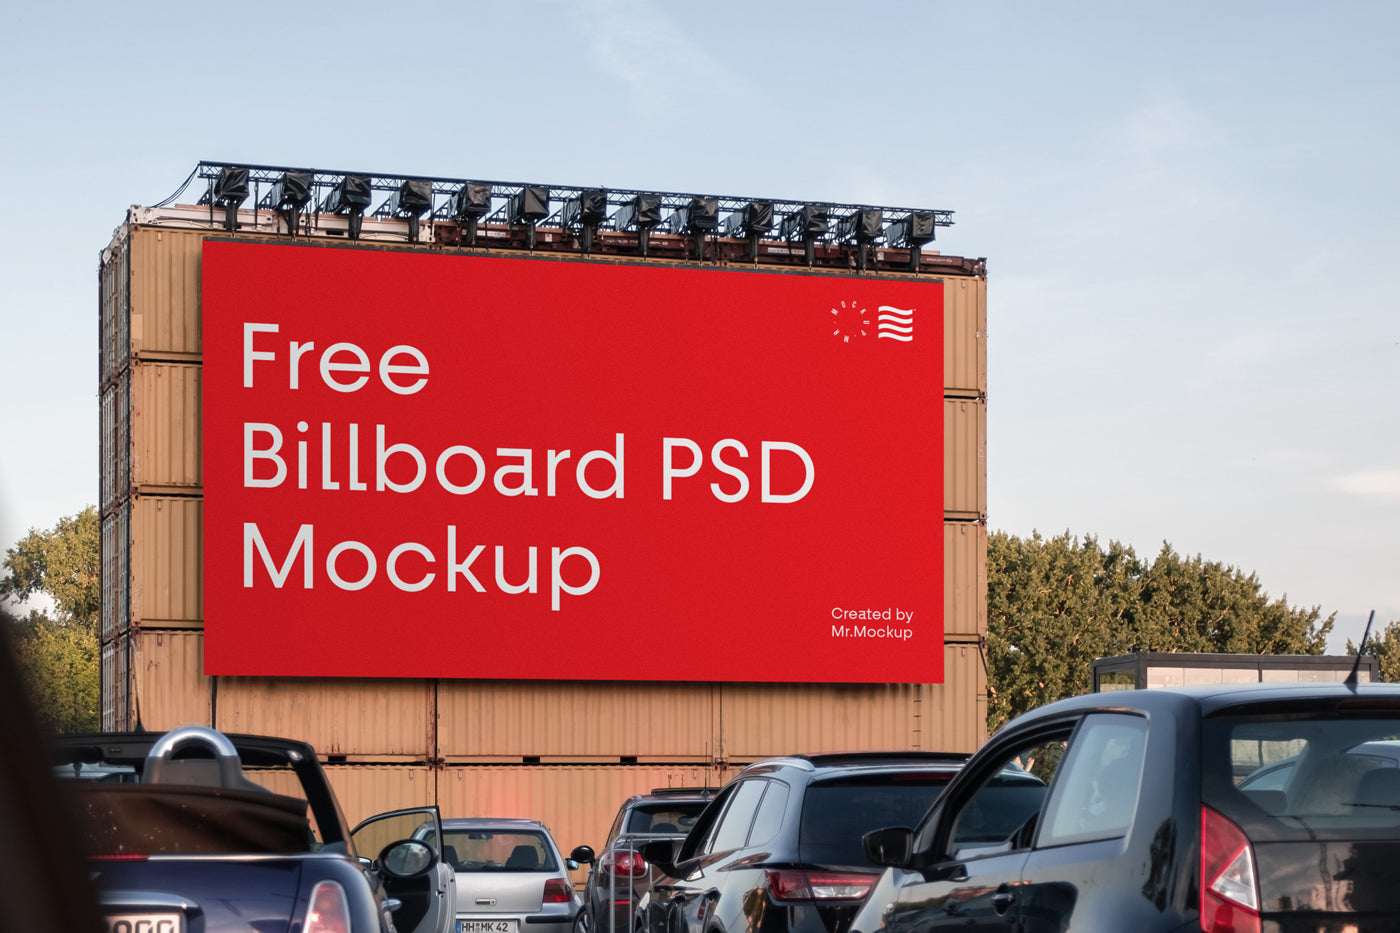 Free Big Billboard Psd Mockup